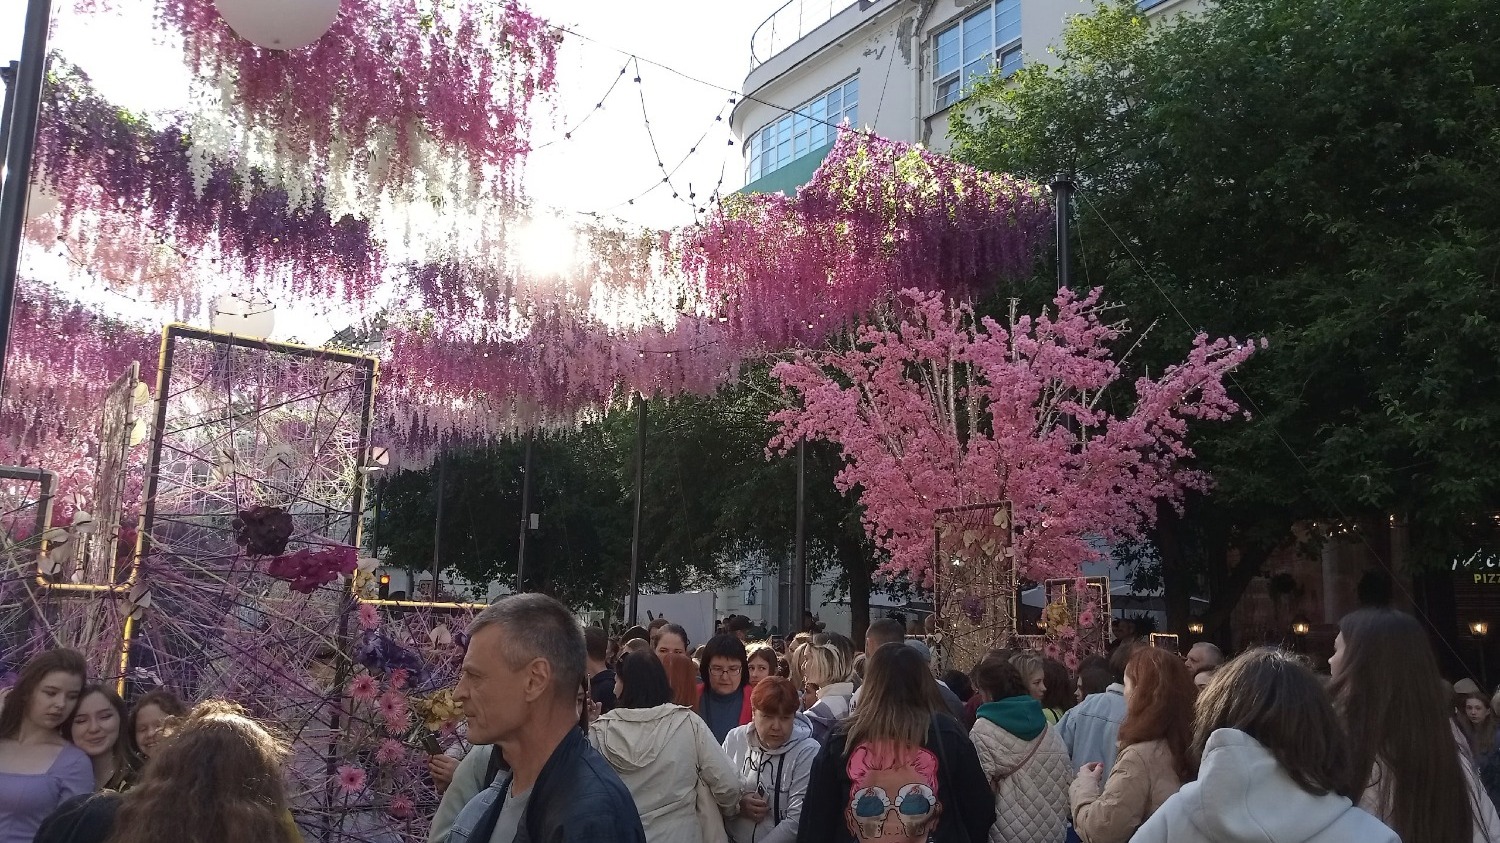 По задумке устроителей, фестиваль показывает 4 времени года языком цветов